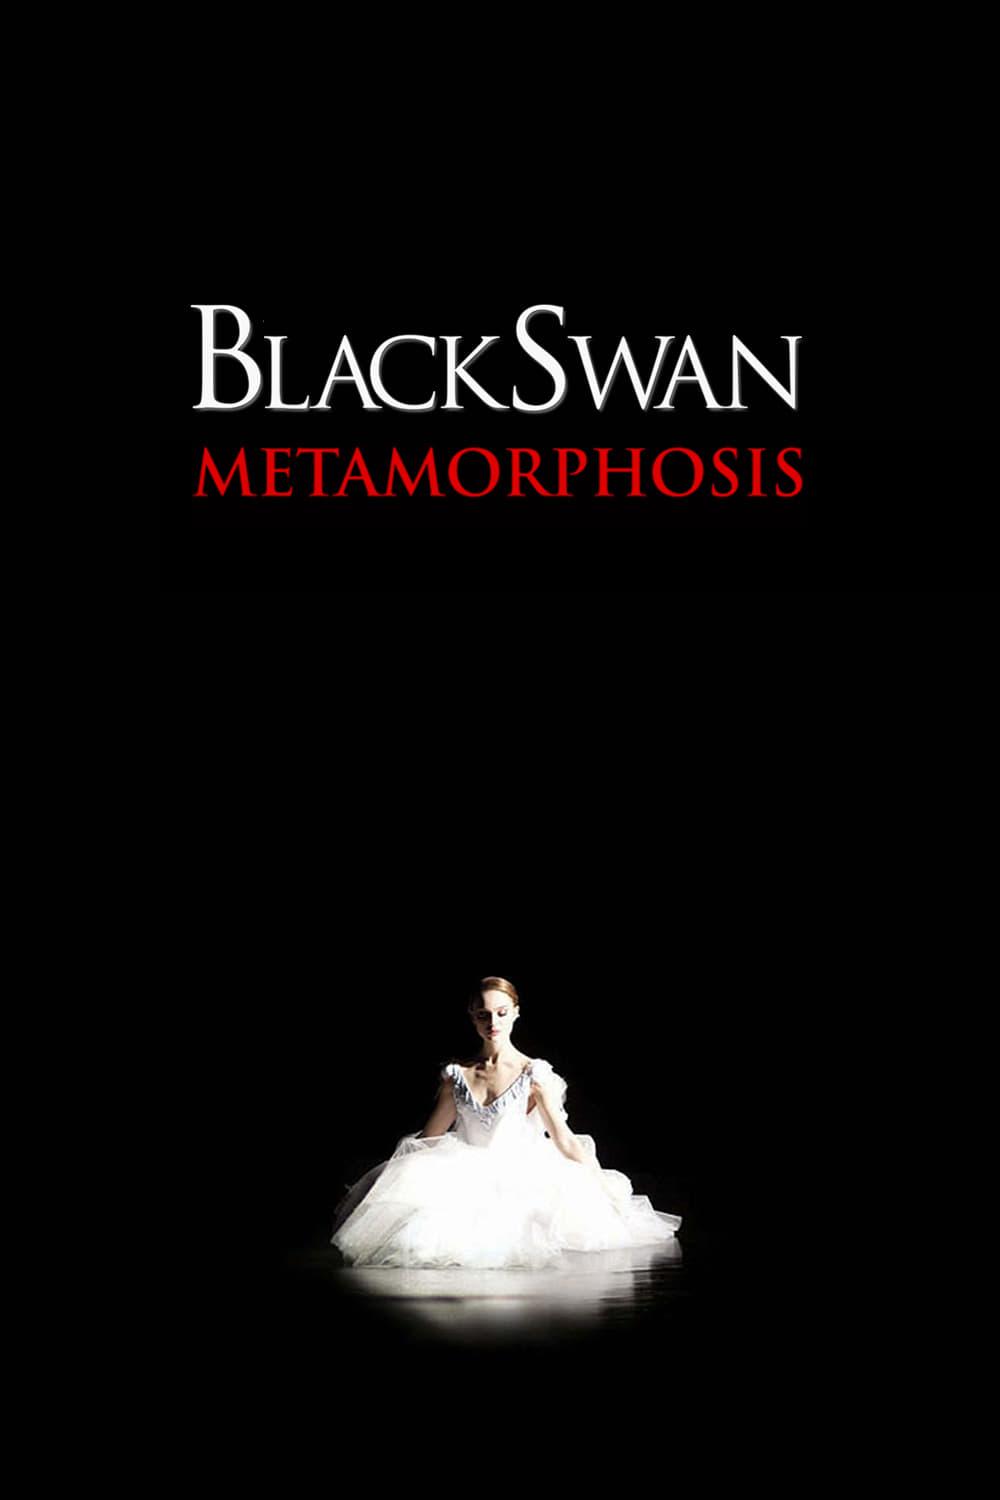 Black Swan: Metamorphosis poster